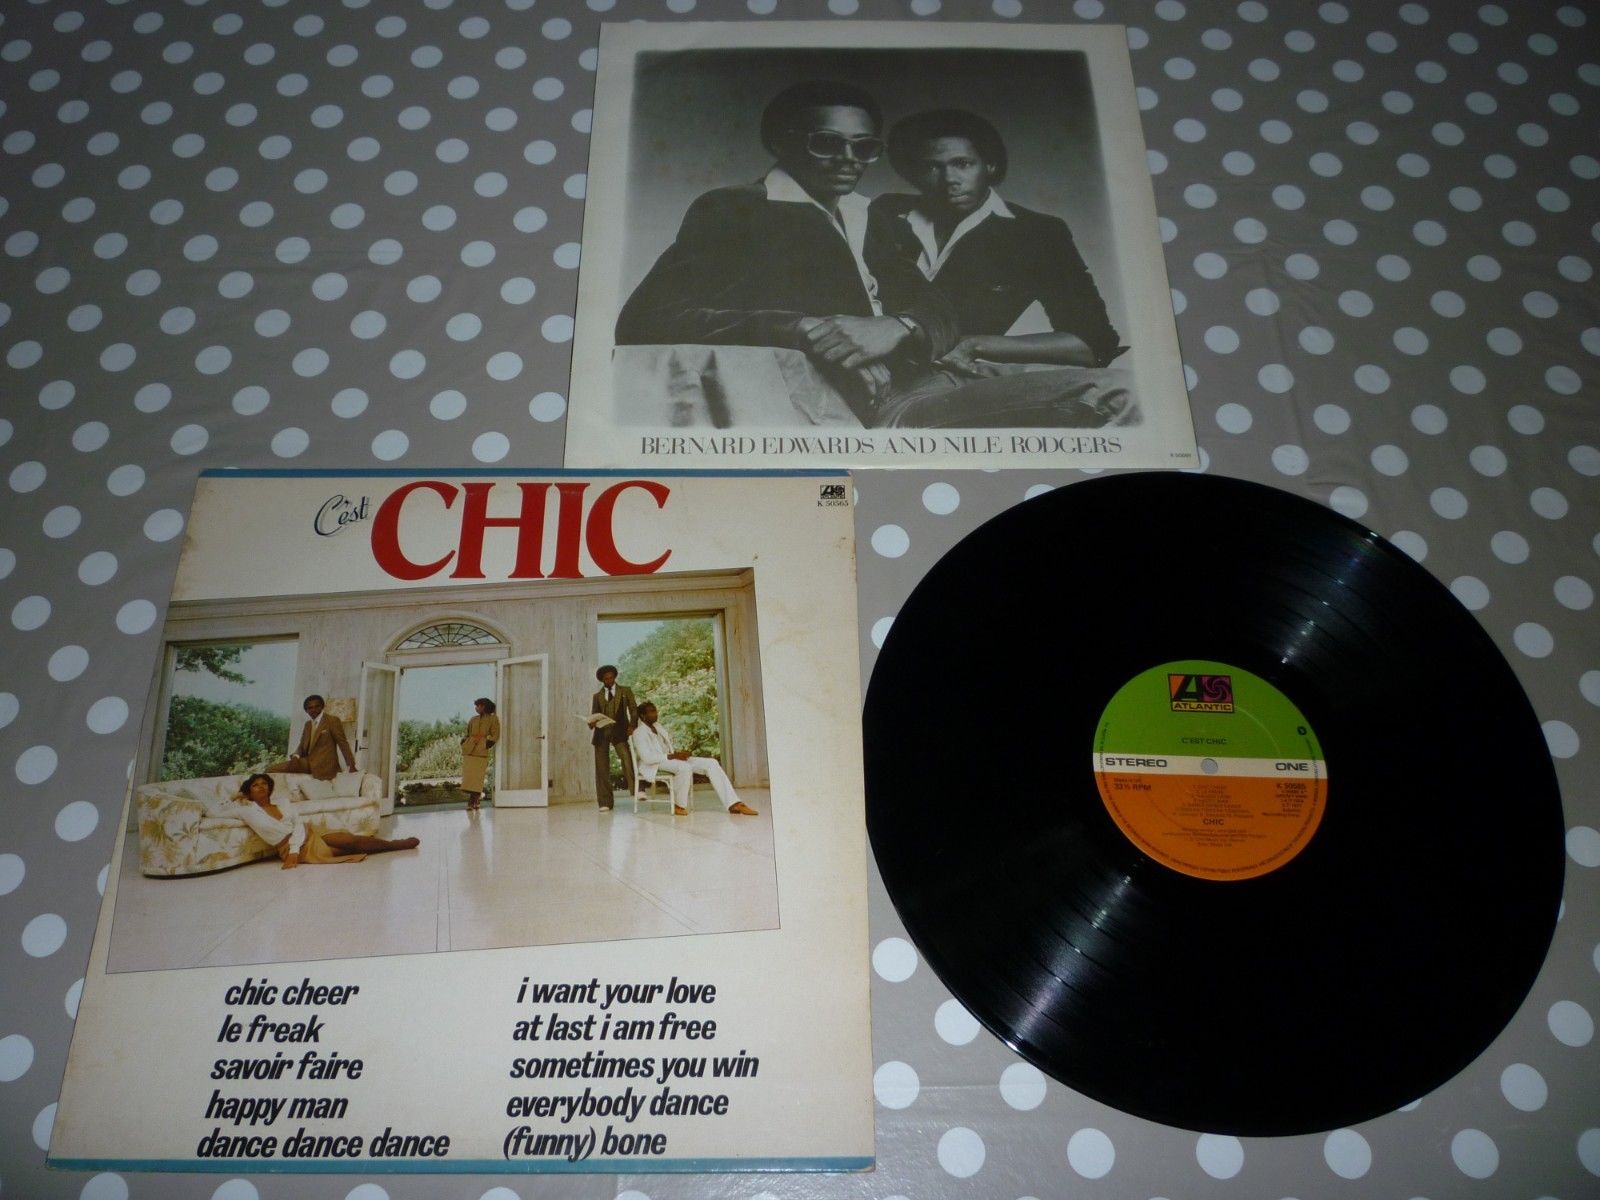  CHIC - C'EST CHIC (NILE ROGERS) VINYL ALBUM LP